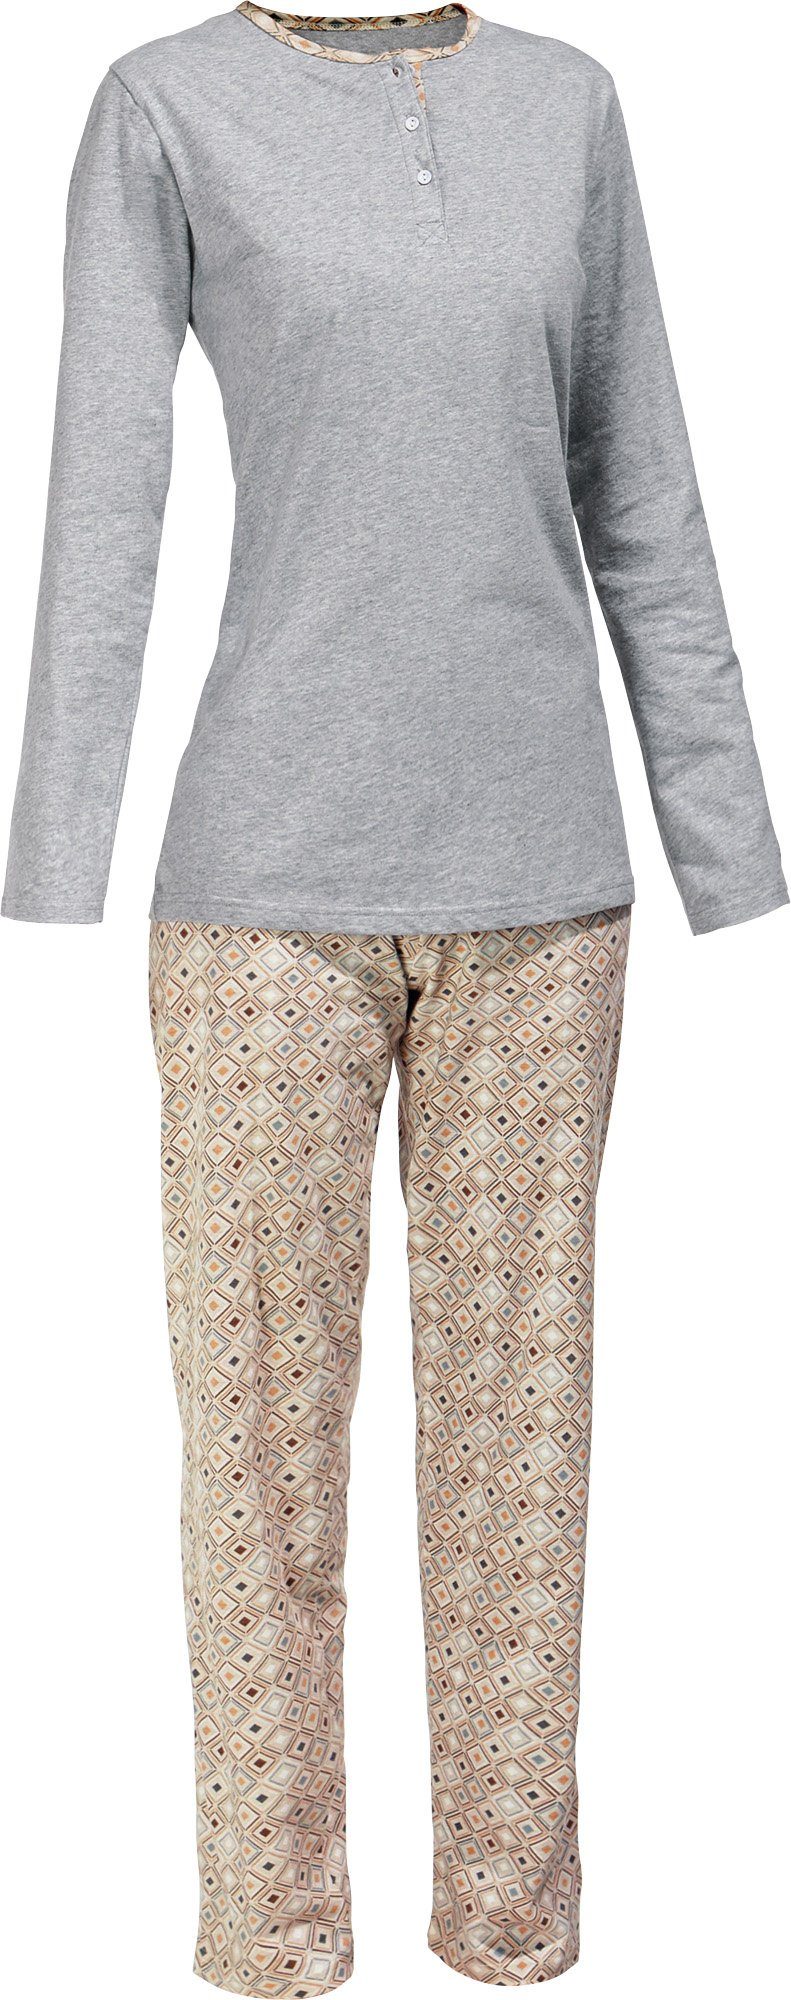 Erwin Müller Pyjama Damen-Schlafanzug (2 tlg) Single-Jersey gemustert | Pyjamas